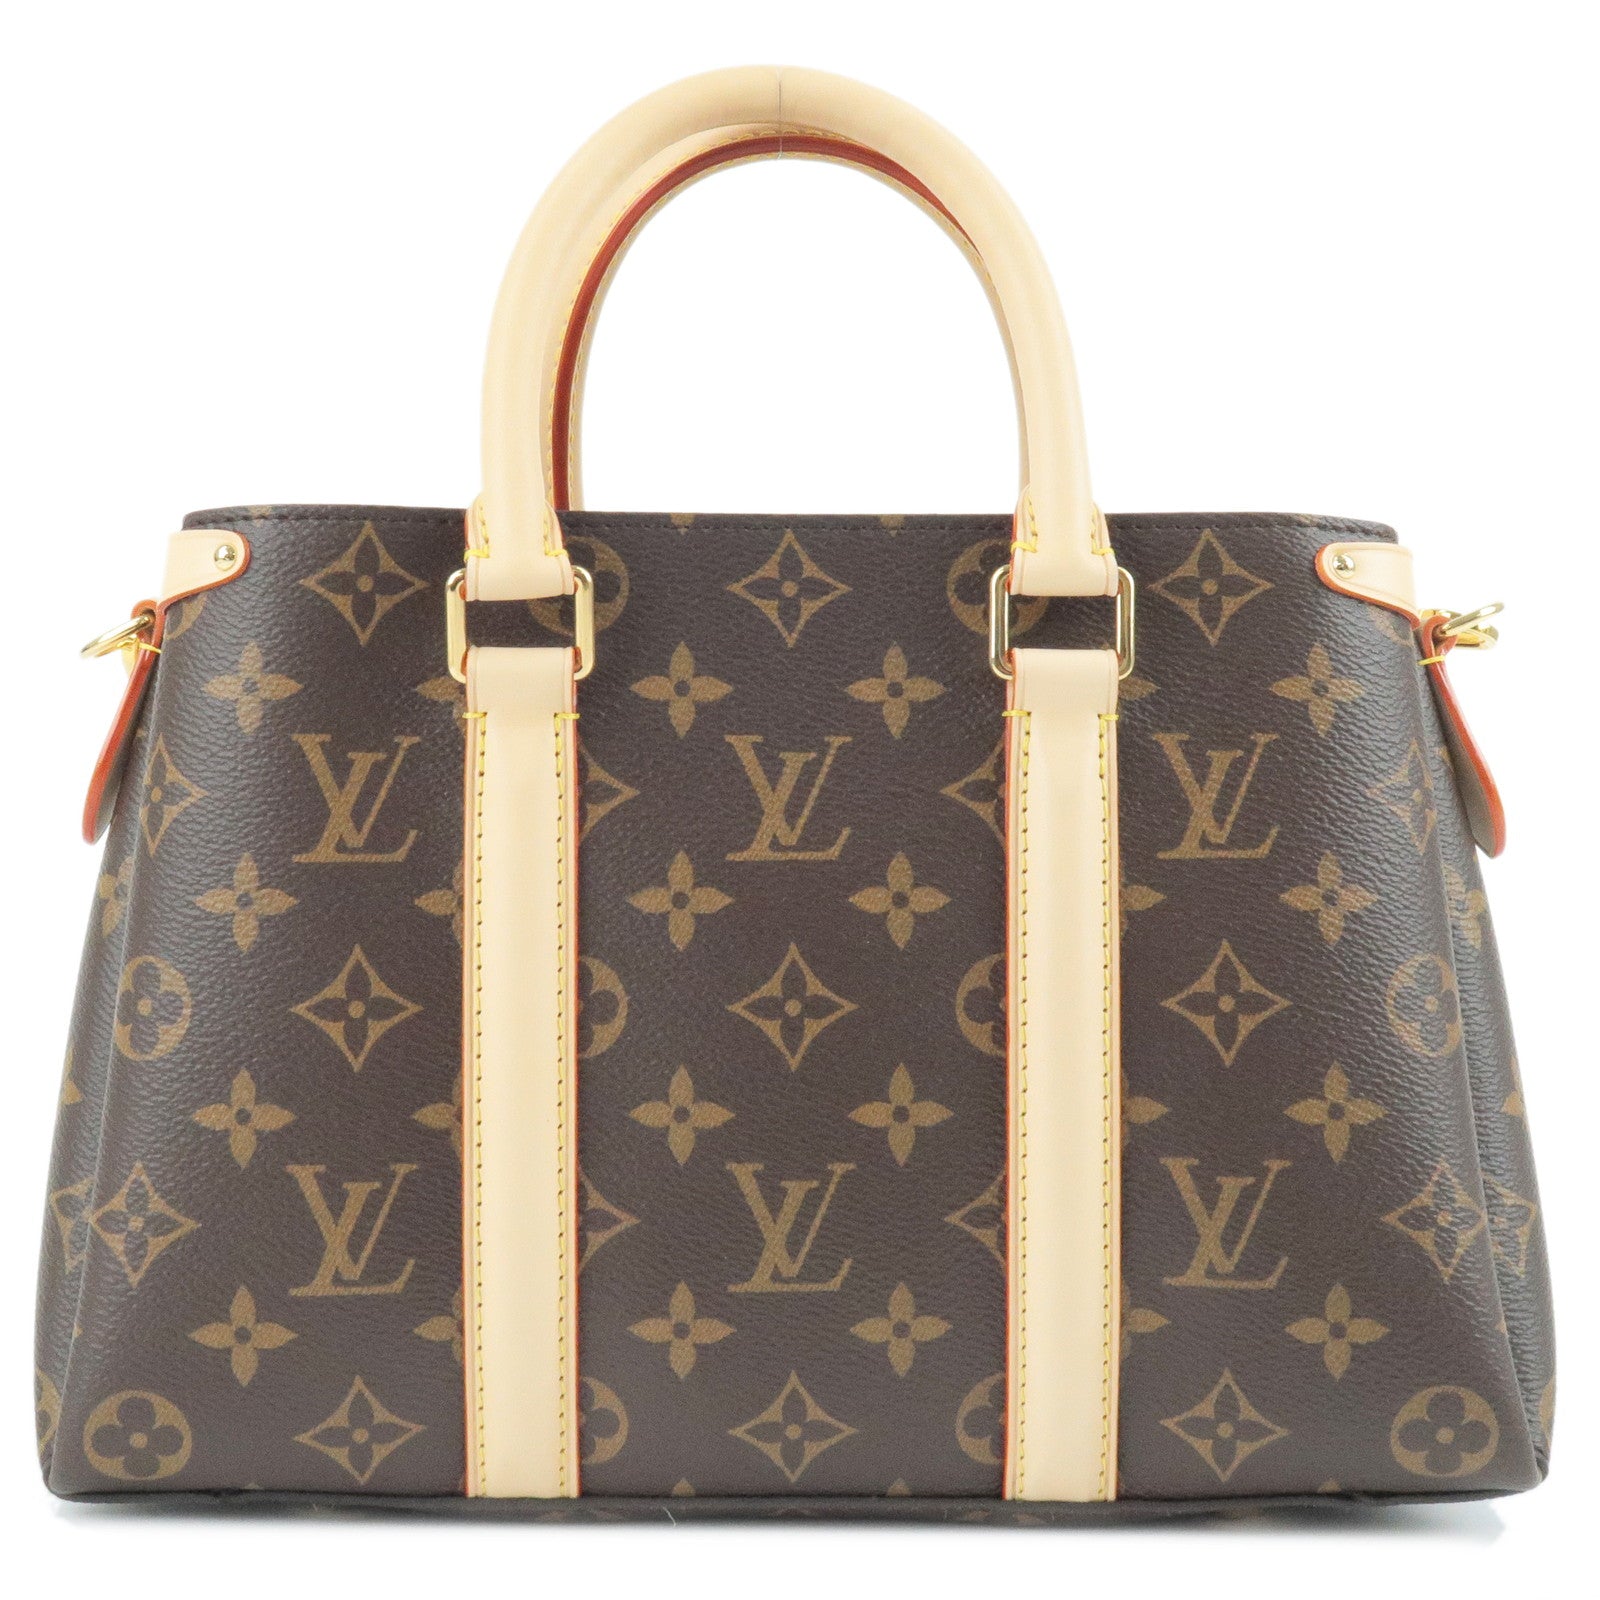 Louis Vuitton Soufflot Monogram Canvas Bag